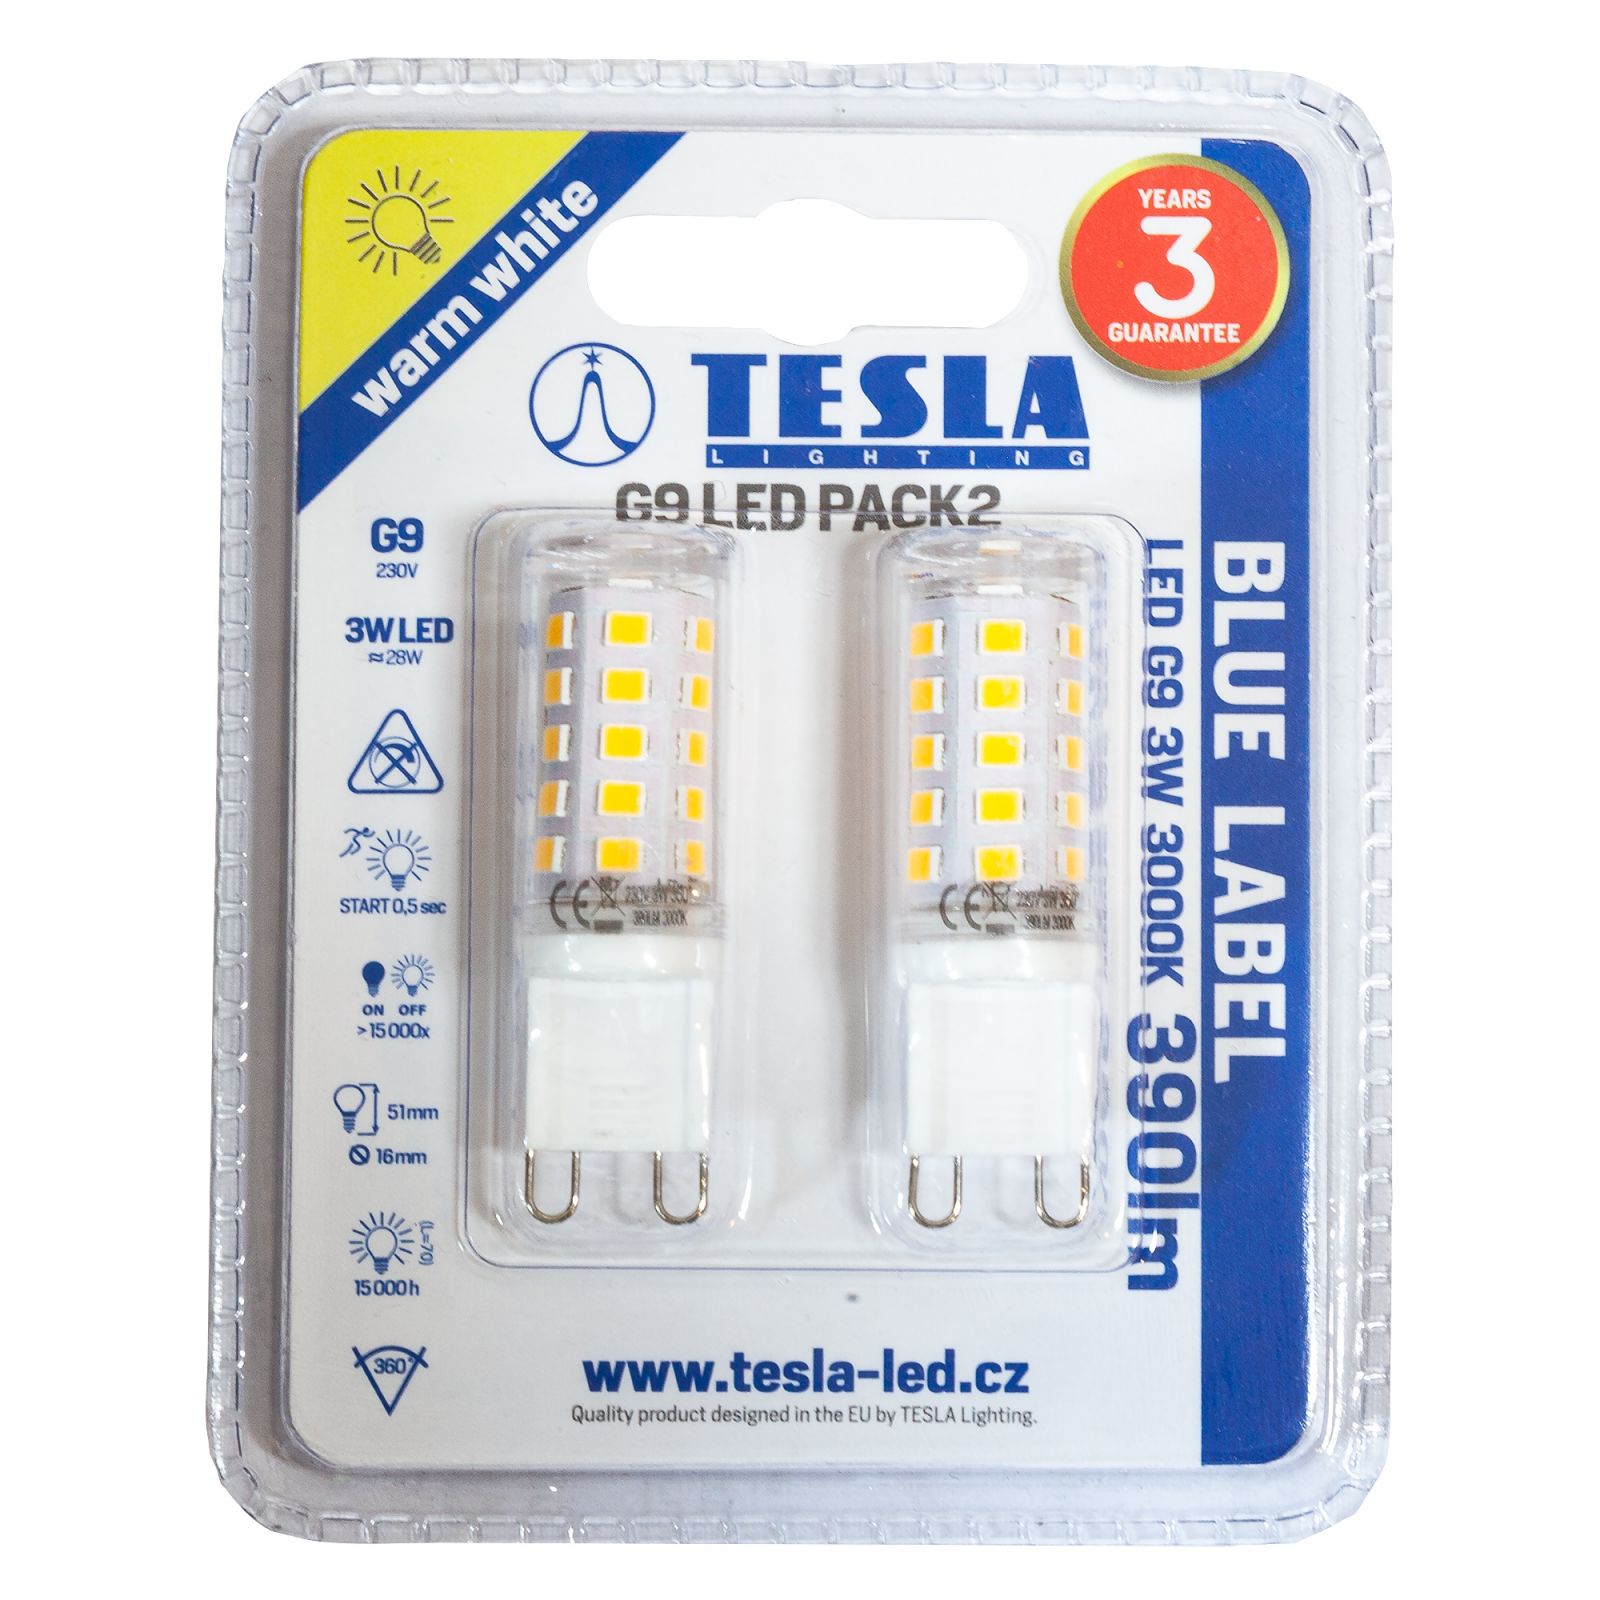 Tesla - LED žárovka, G9, 3W, 230V, 300lm, 15 000h, 3000K teplá bílá, 360st 2ks v balení Tesla Lighting